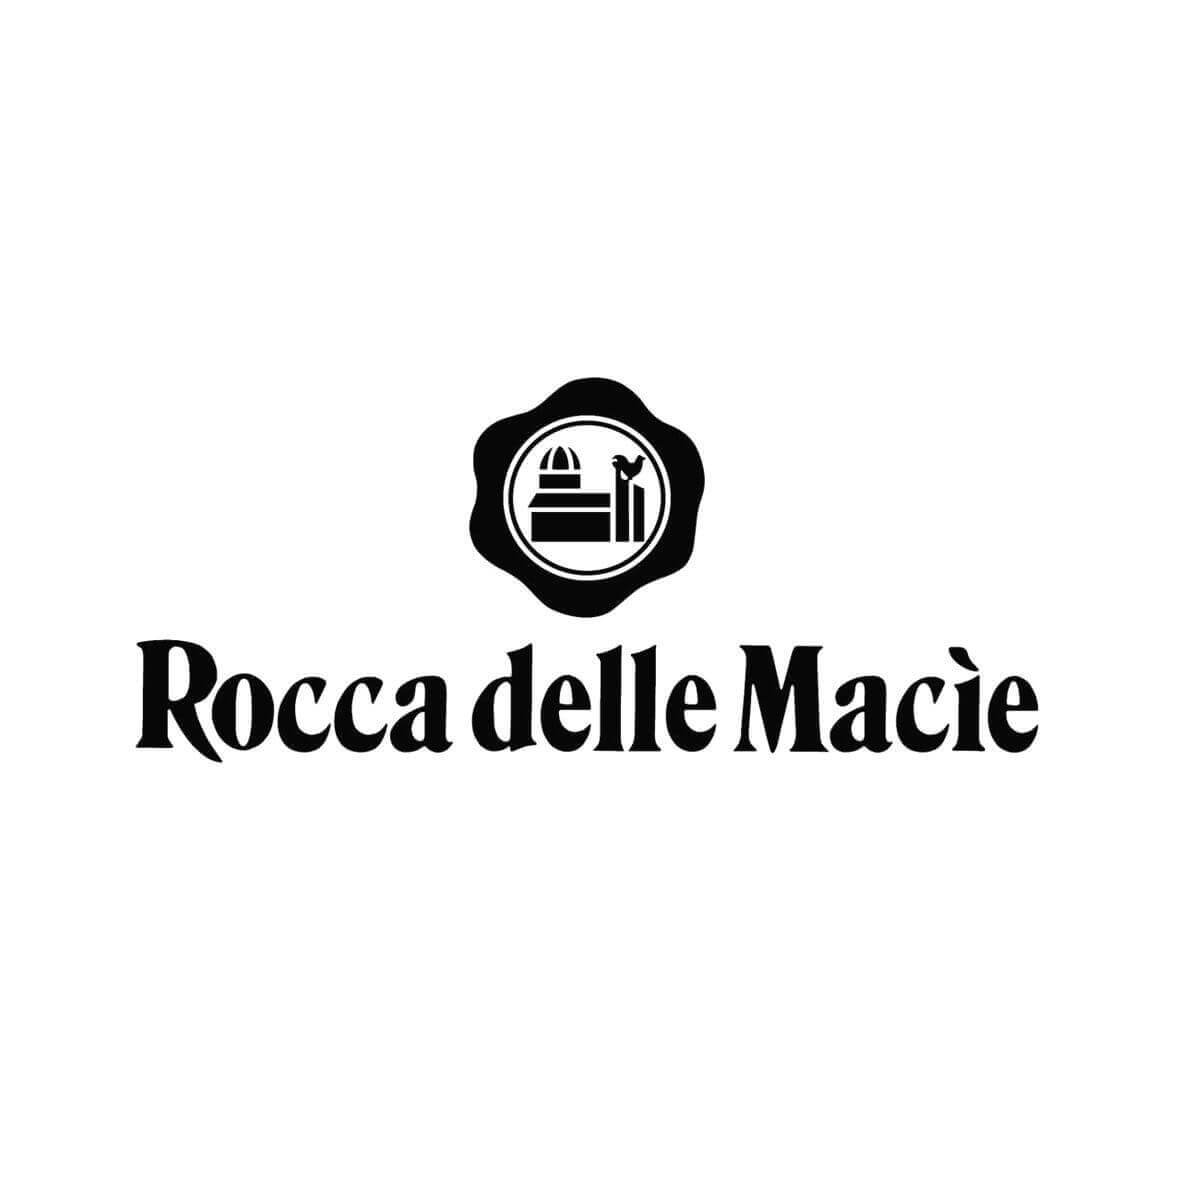 Rocca delle Macie